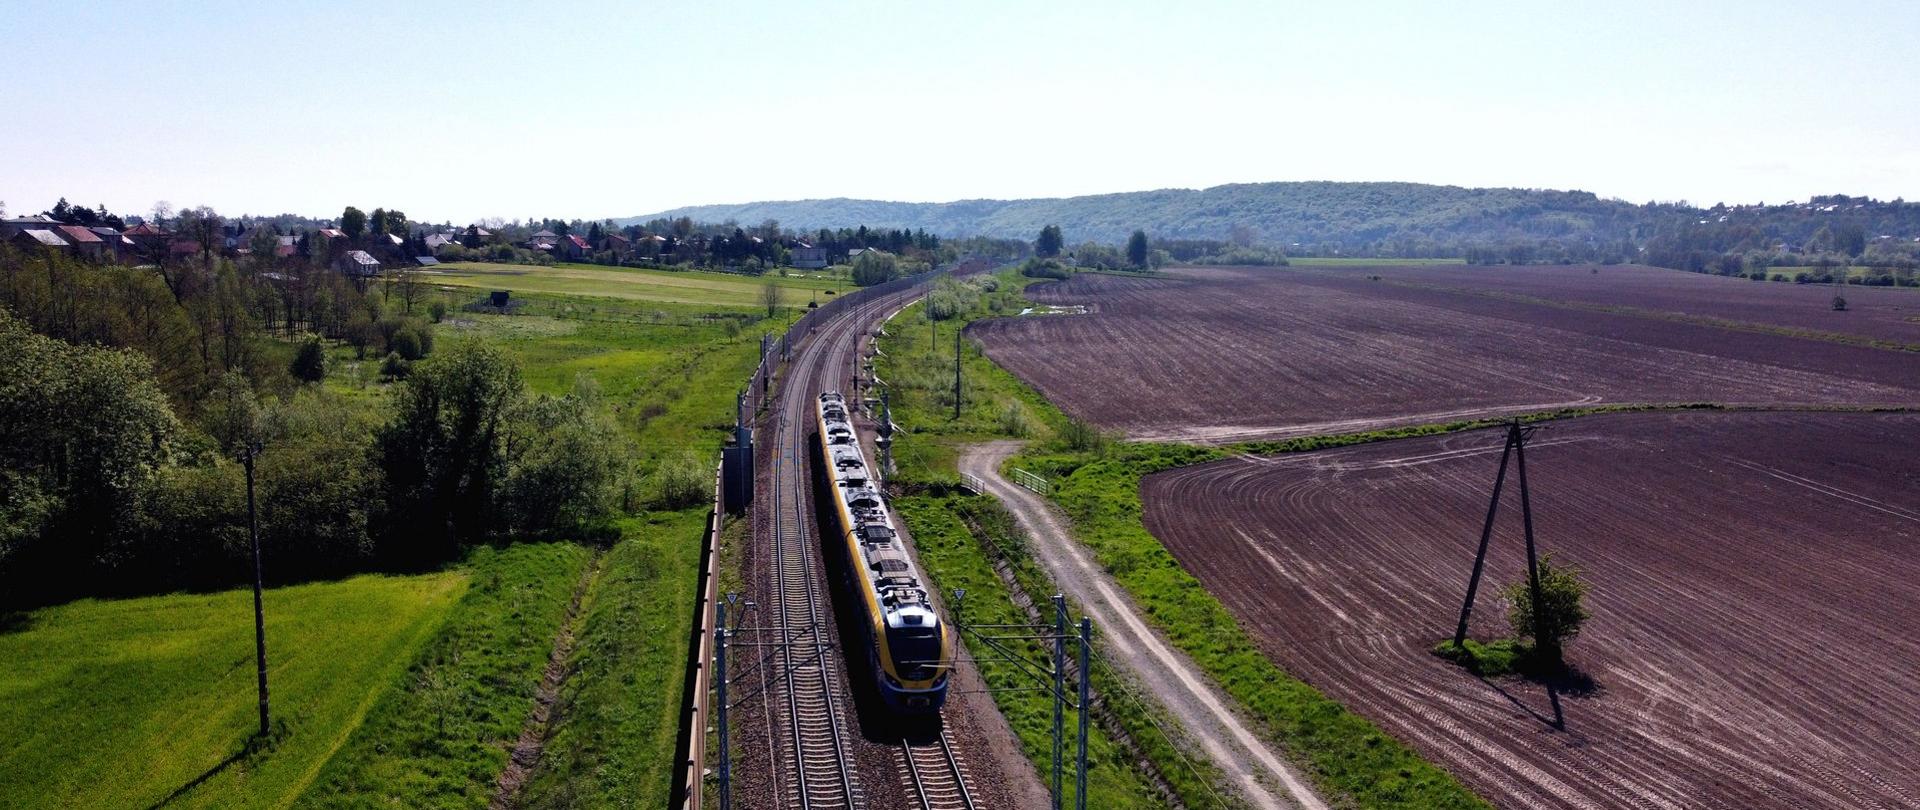 Jest przetarg na nowy przystanek kolejowy w aglomeracji krakowskiej